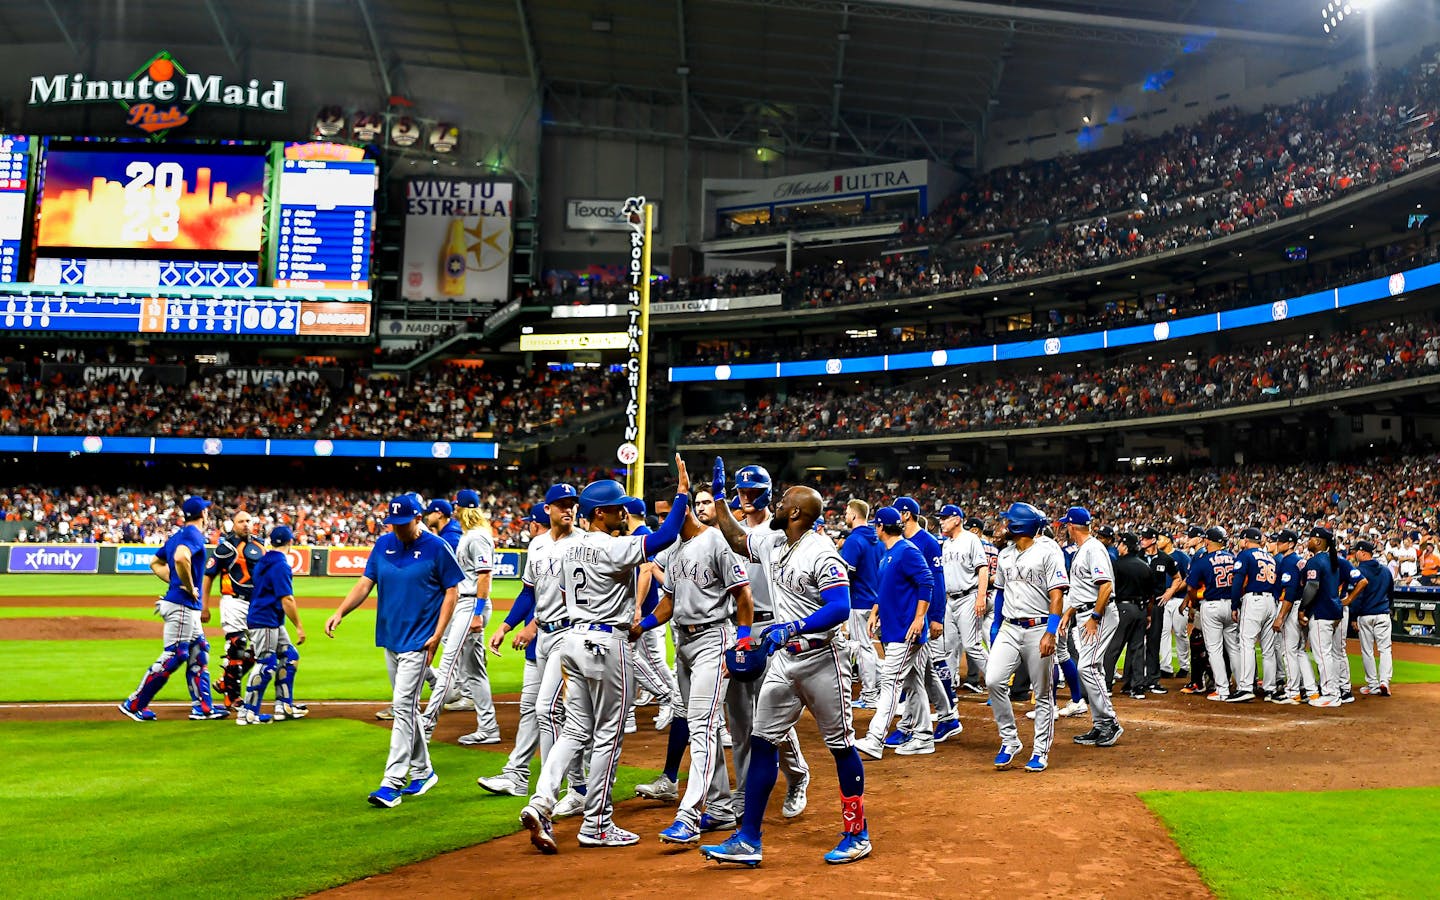 Astros, Rangers to open 2013 MLB season